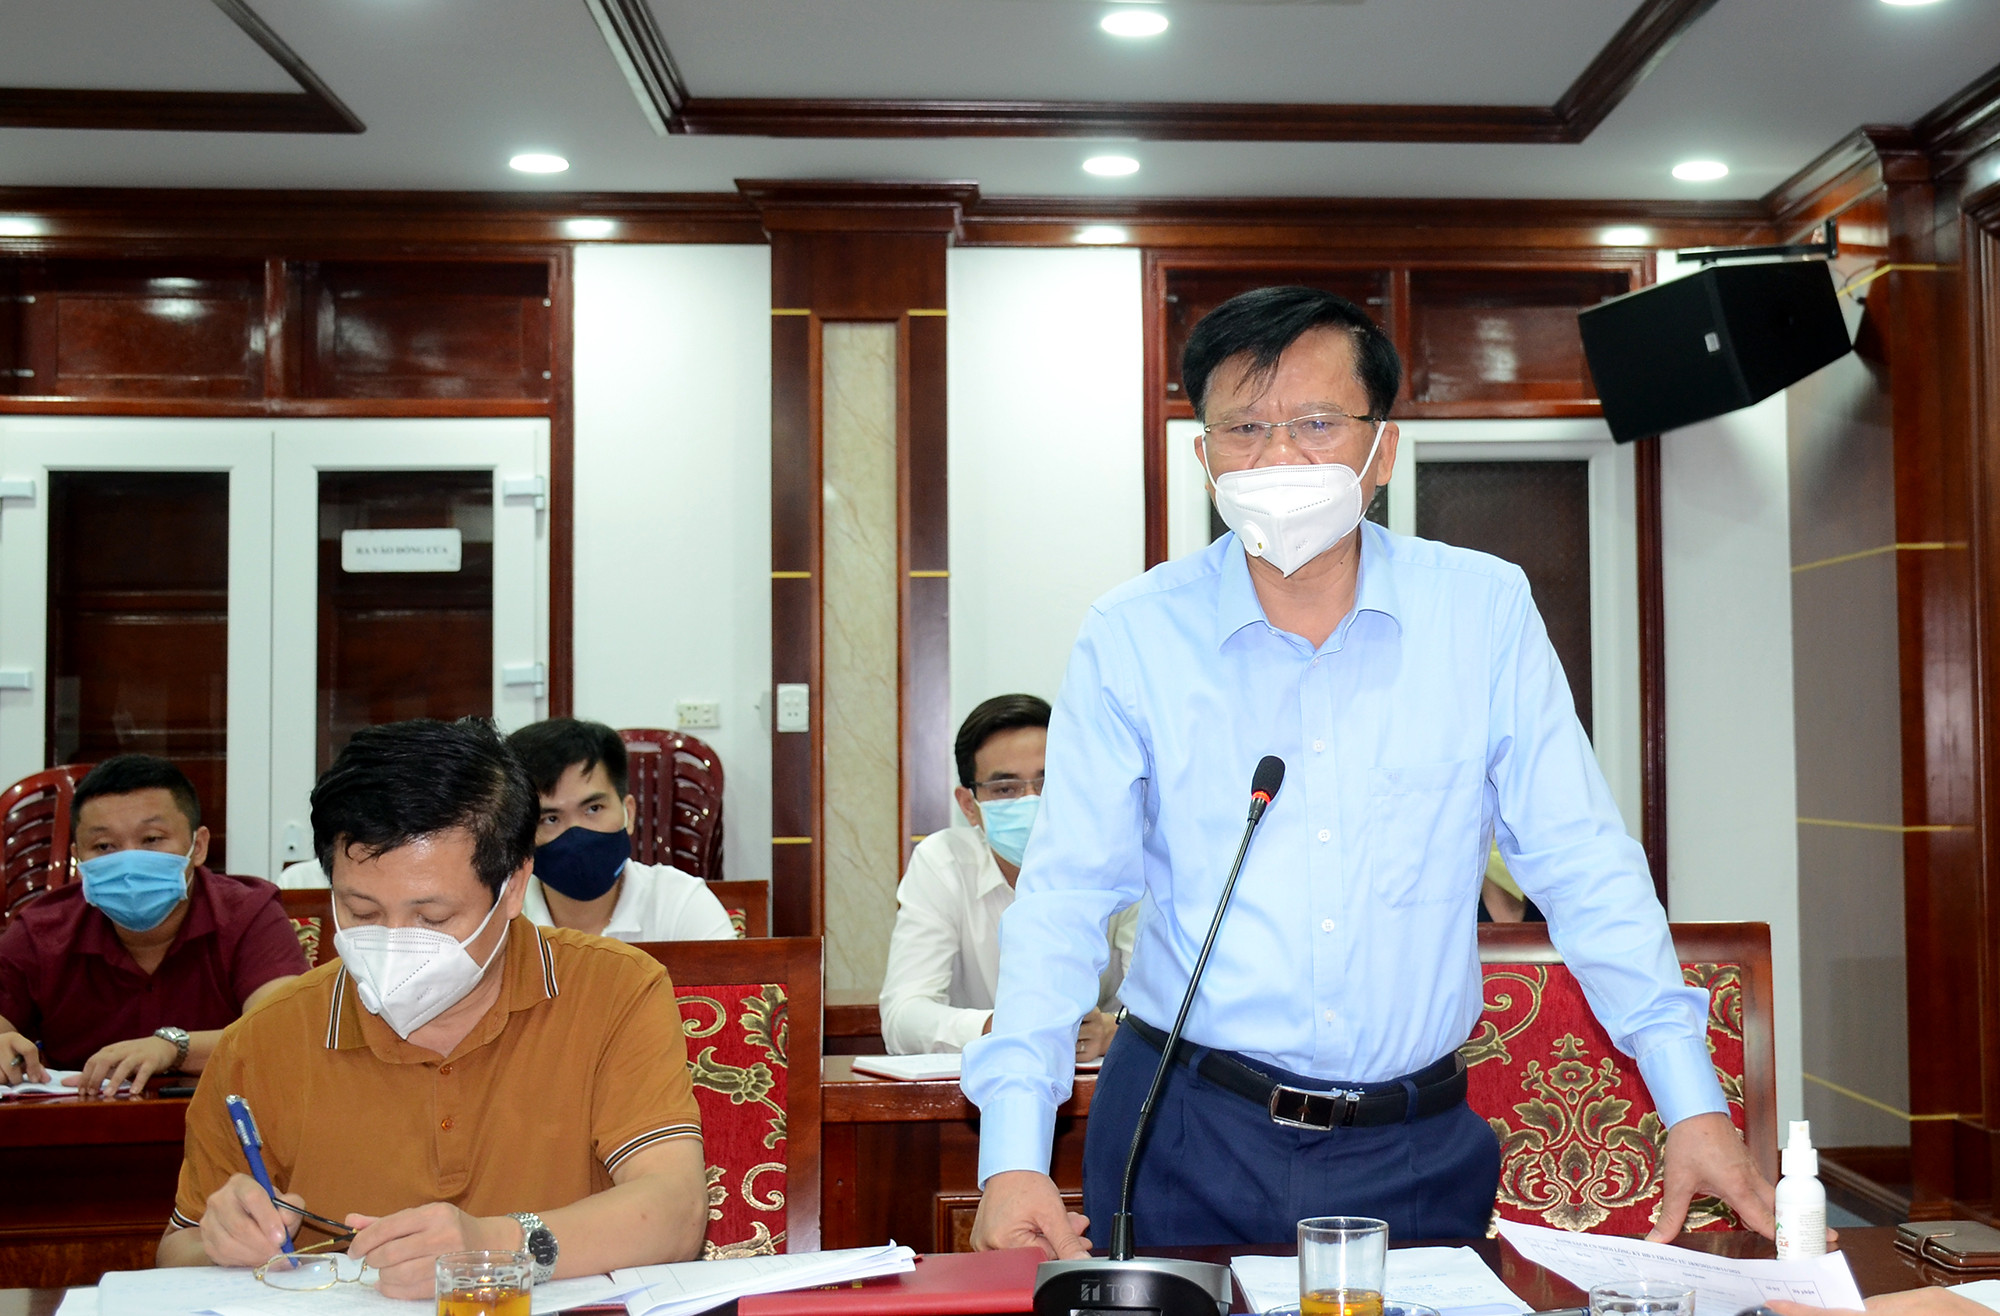 Chủ tịch UBND huyện Yên Thành báo cáo tình hình dịch Covid-19 và các biện pháp phòng chống của địa phương. Ảnh: Thành Chung